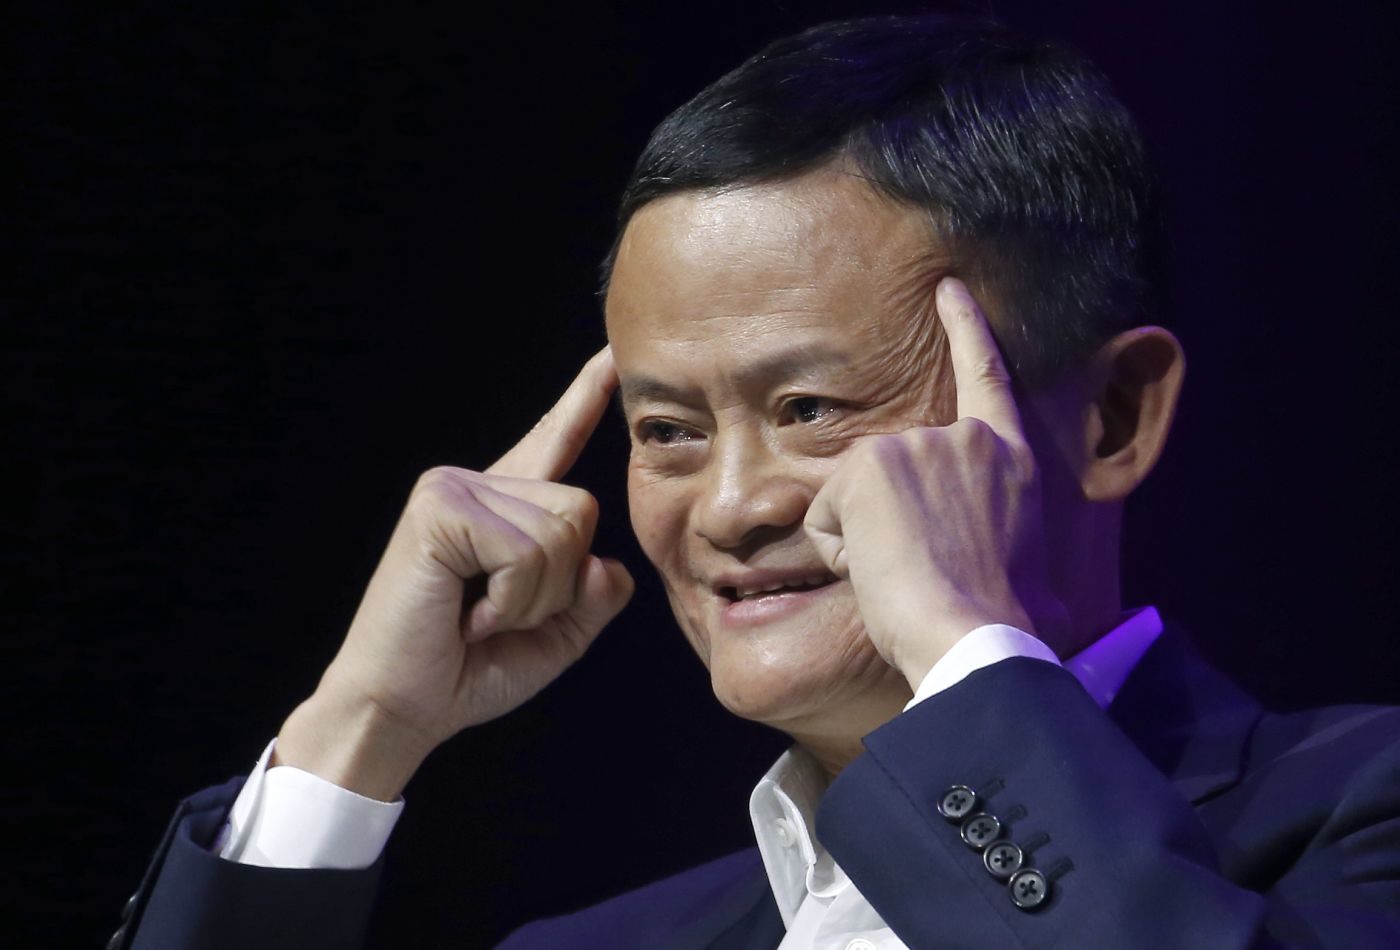 Công việc đầu tiên của chủ Alibaba Jack Ma là giáo viên tiếng Anh tại thành phố Hàng Châu, Trung Quốc. Sau khi nghỉ hưu, ông tuyên bố muốn quay lại làm thầy giáo và dành thêm 15 năm nữa cho lĩnh vực giáo dục. Hiện ông Jack sở hữu 41,1 tỉ USD. Ảnh: ST